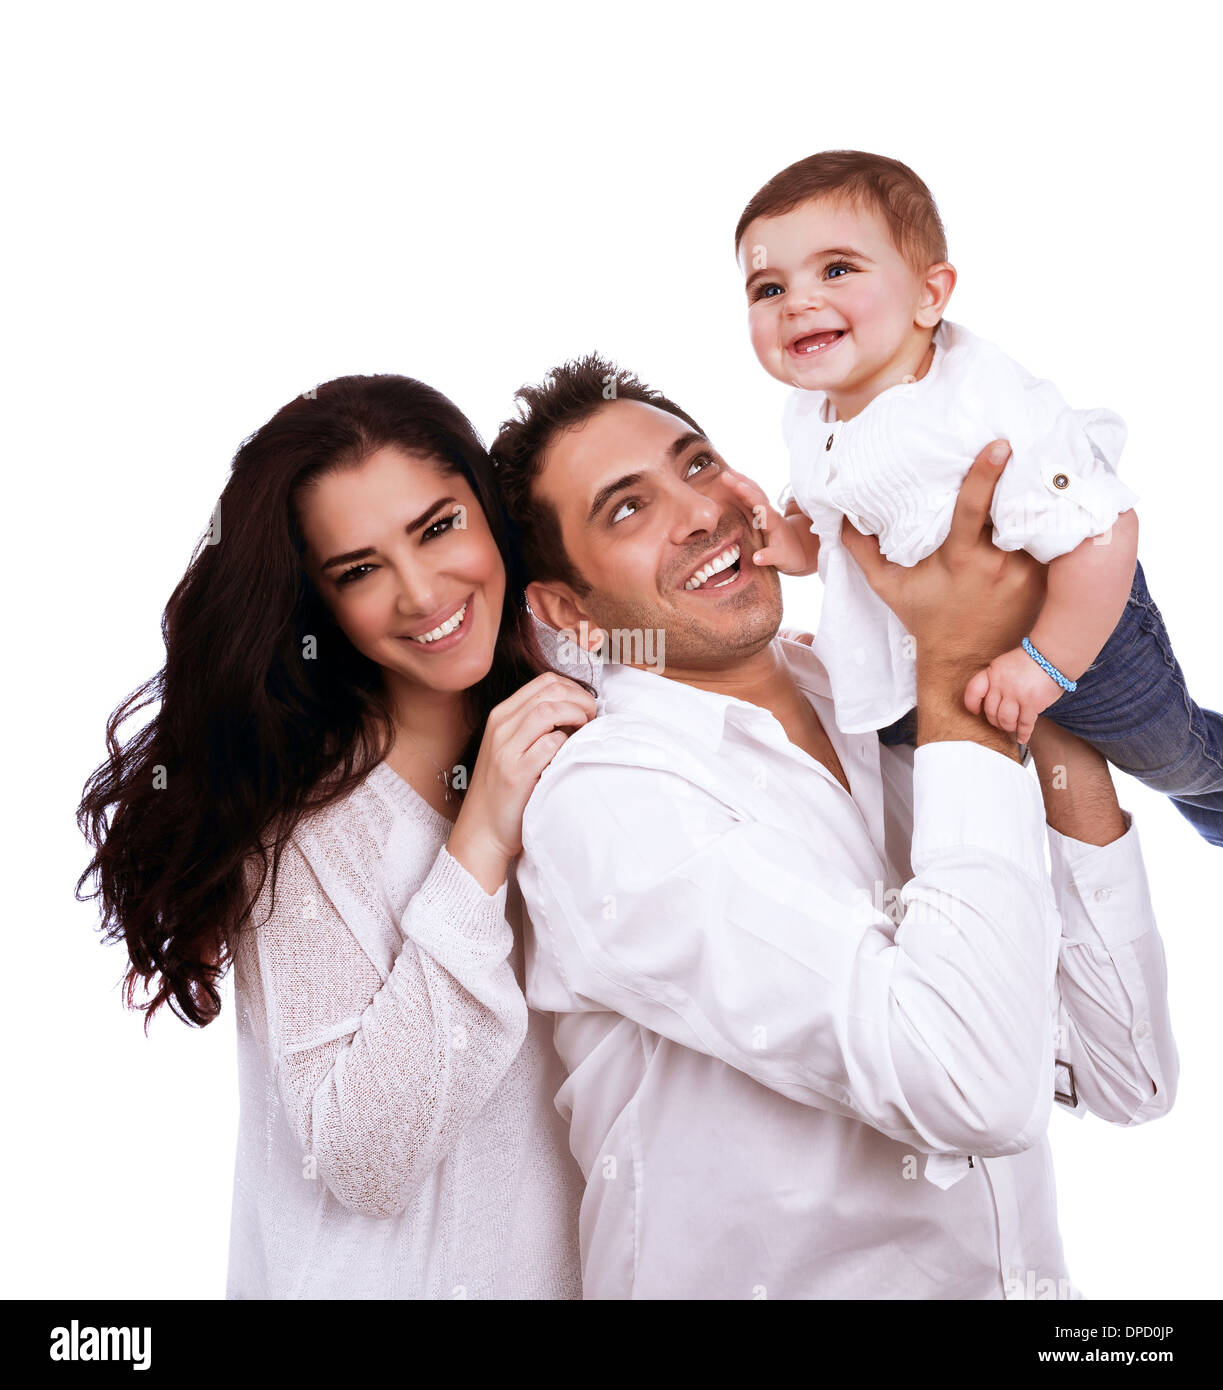 Giocoso giovane famiglia isolato su sfondo bianco, adorabile bambina con amorevole dei genitori, uno stile di vita sano, di felicità e di amore Foto Stock